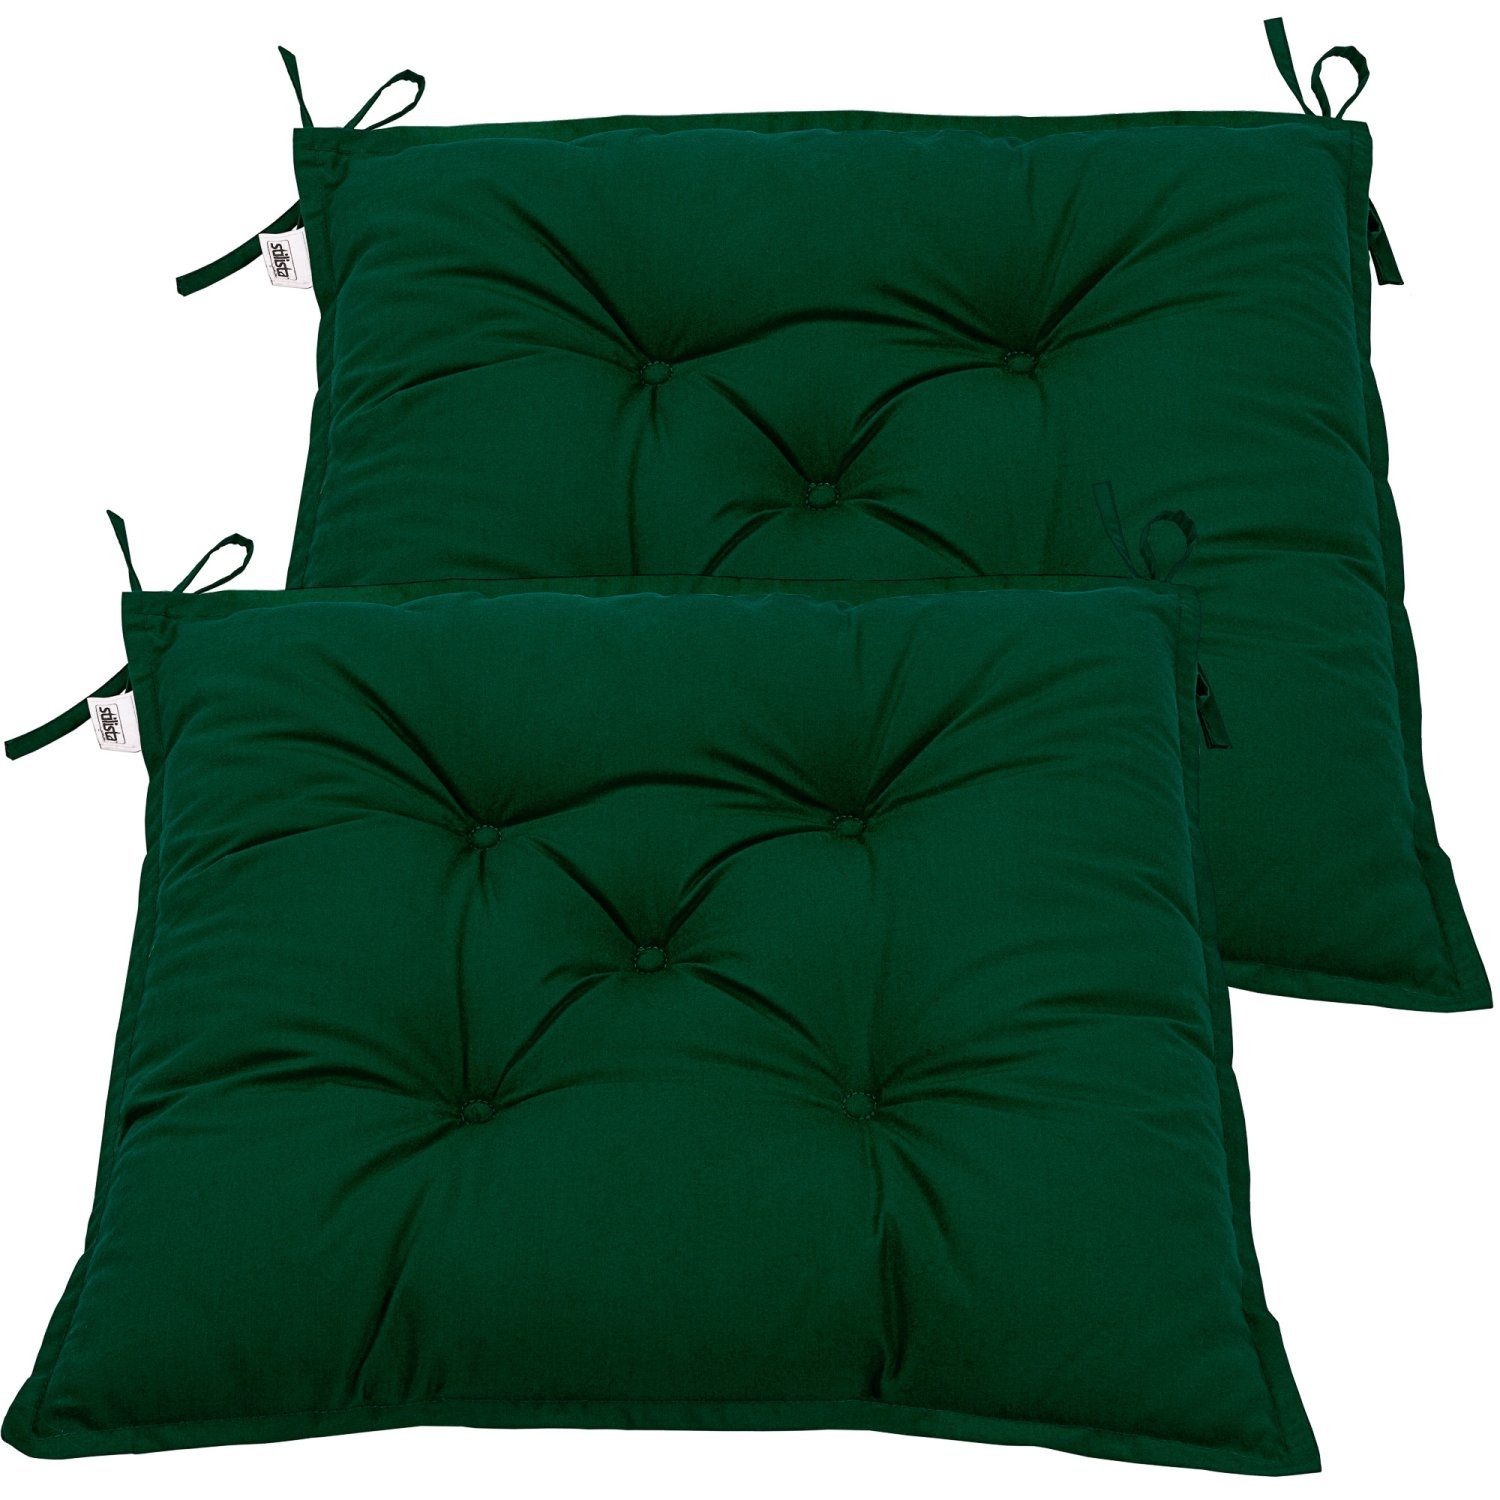 Sitzkissen Stuhlkissen 40x40 cm Auflage Polster Deko grau grün uni viele Farben 